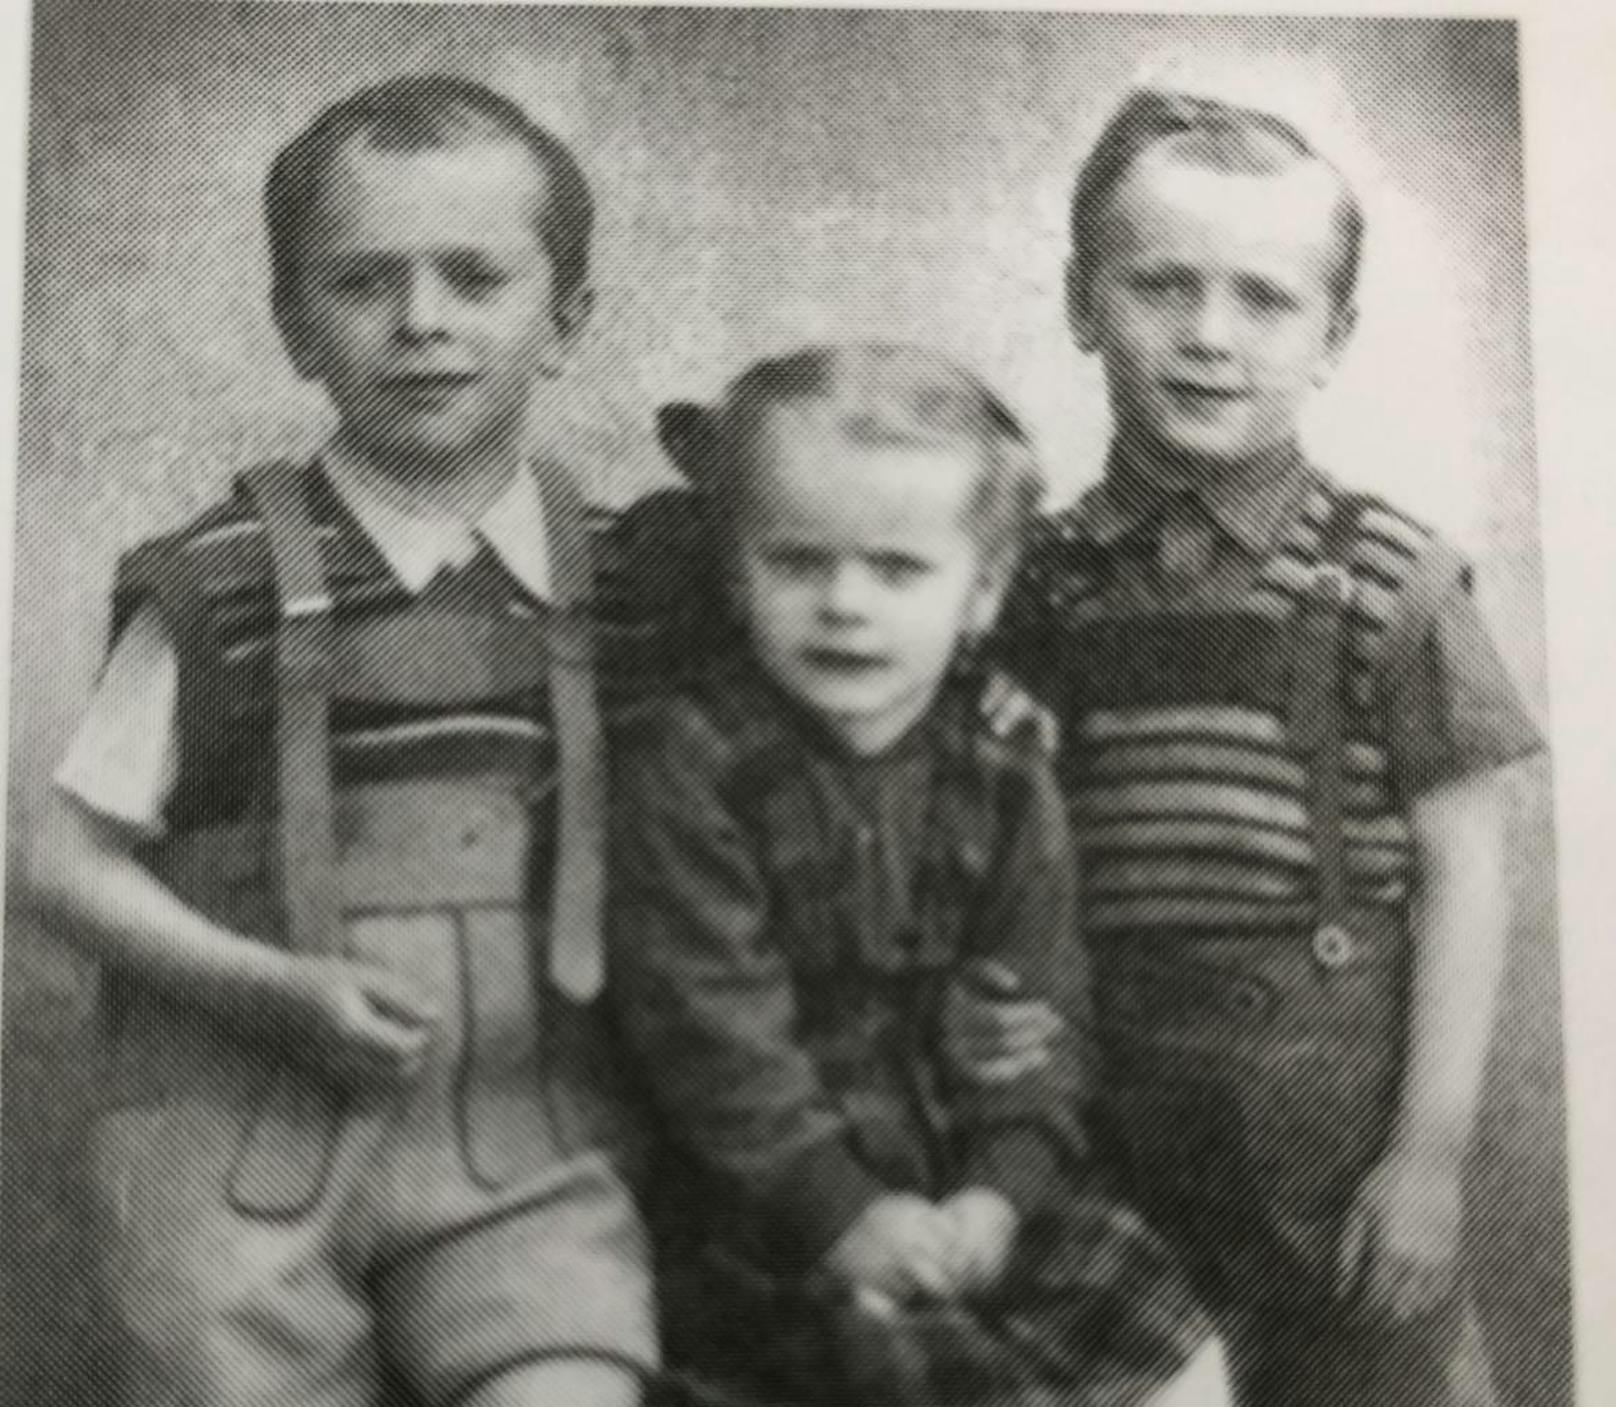 Der kleine Michael (l.) mit seinen Geschwistern.